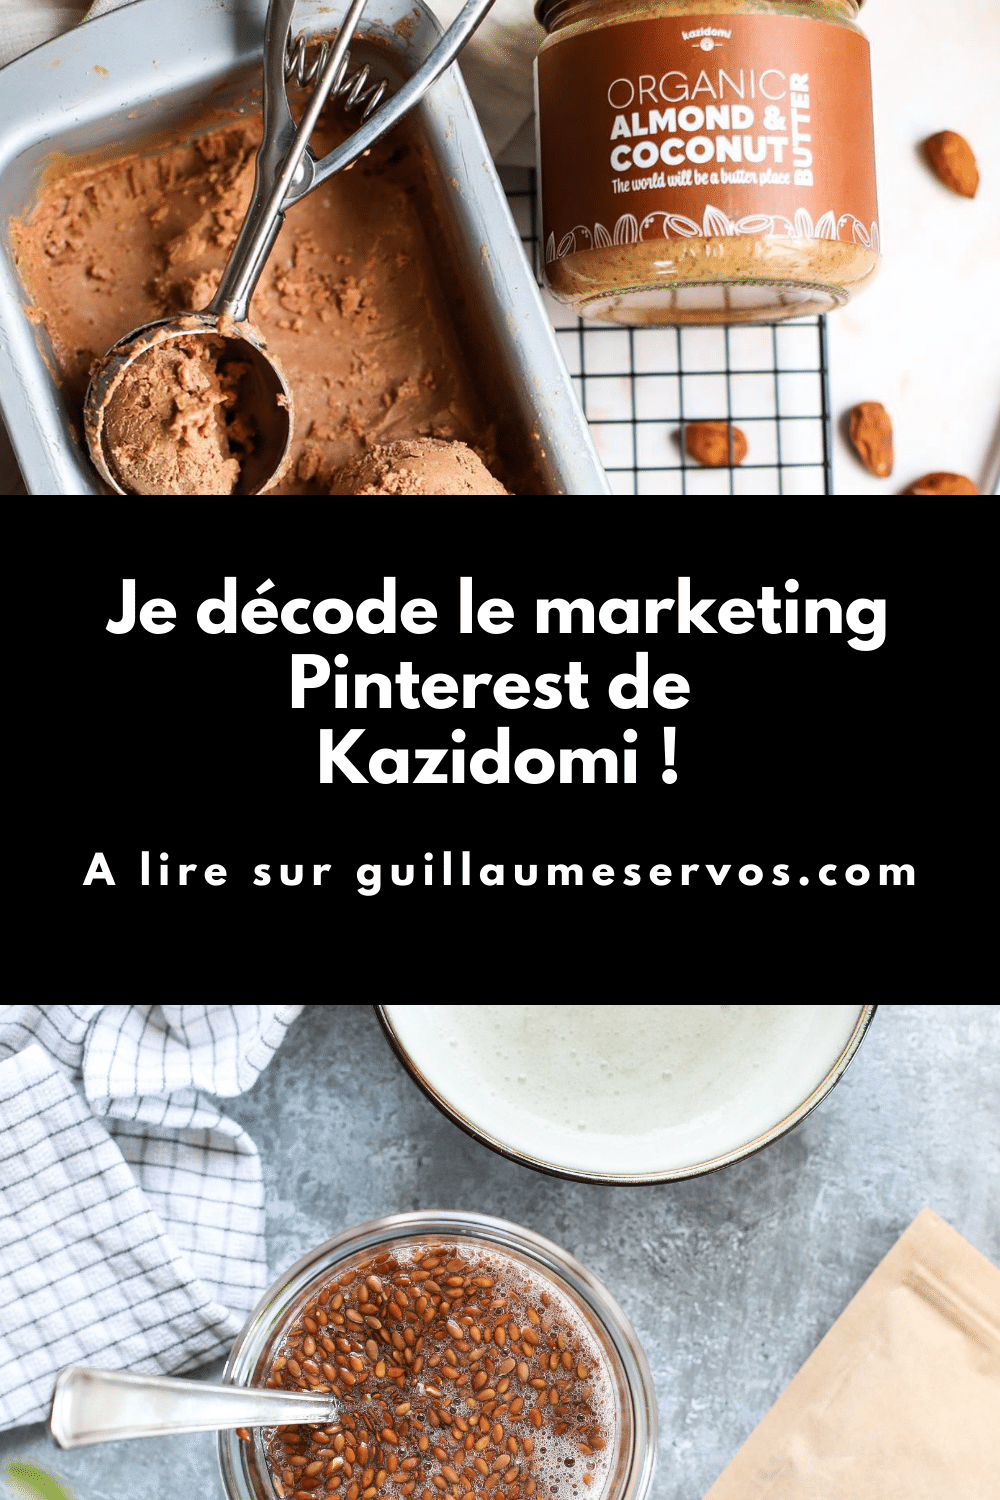 Comment Kazidomi utilise Pinterest pour son business ? Je décode le Pinterest marketing de ce magasin bio en ligne qui vend plus de 4 000 produits sains et naturels.